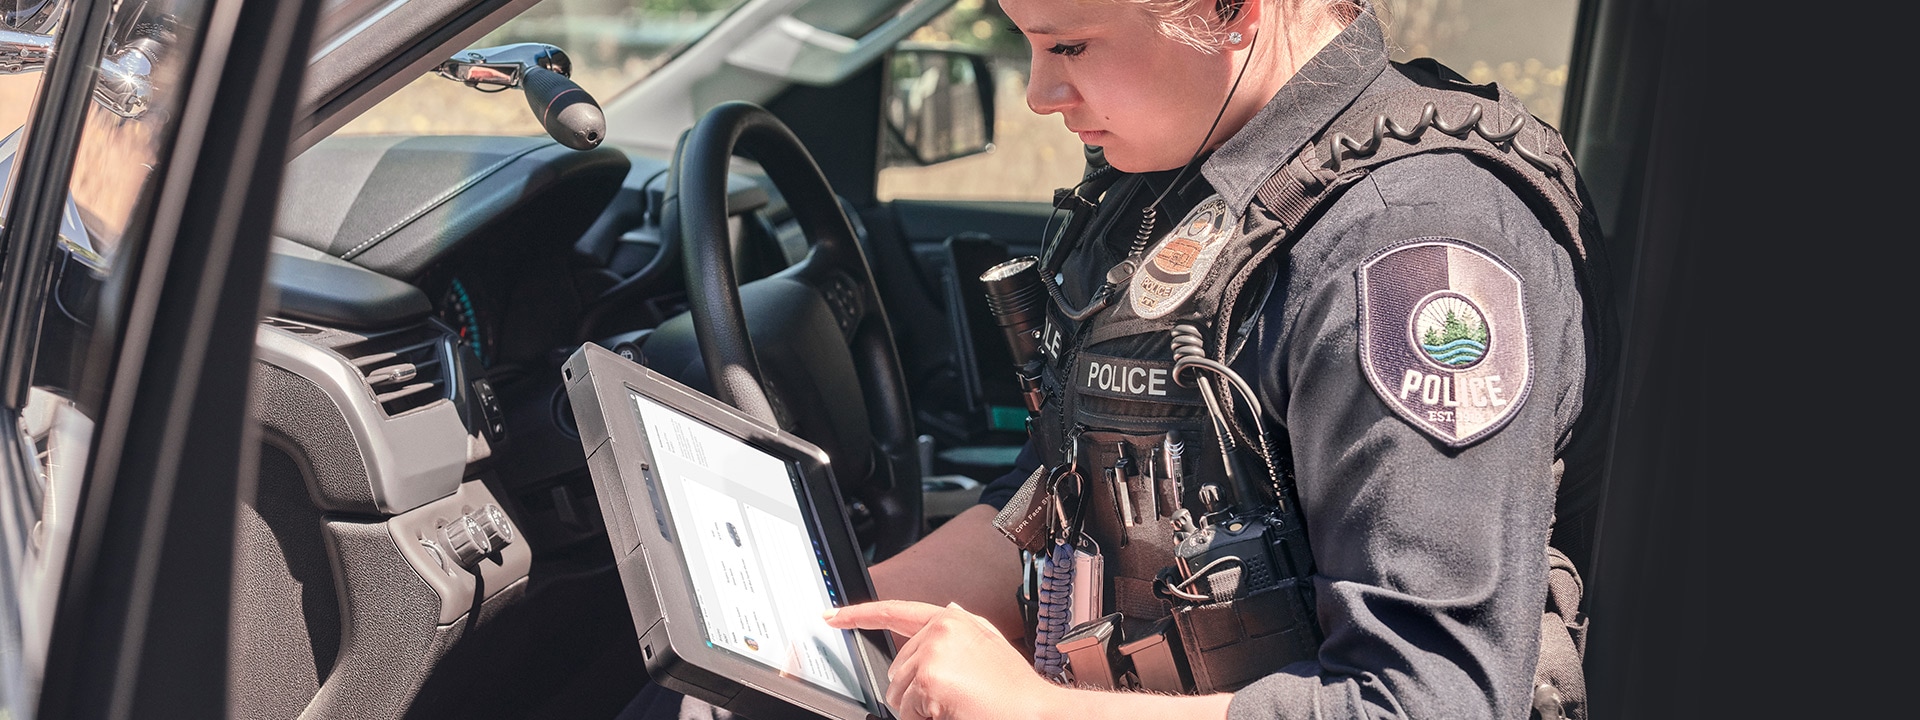 一名女警察坐在巡逻车的副驾驶座位上使用 Surface Pro 设备